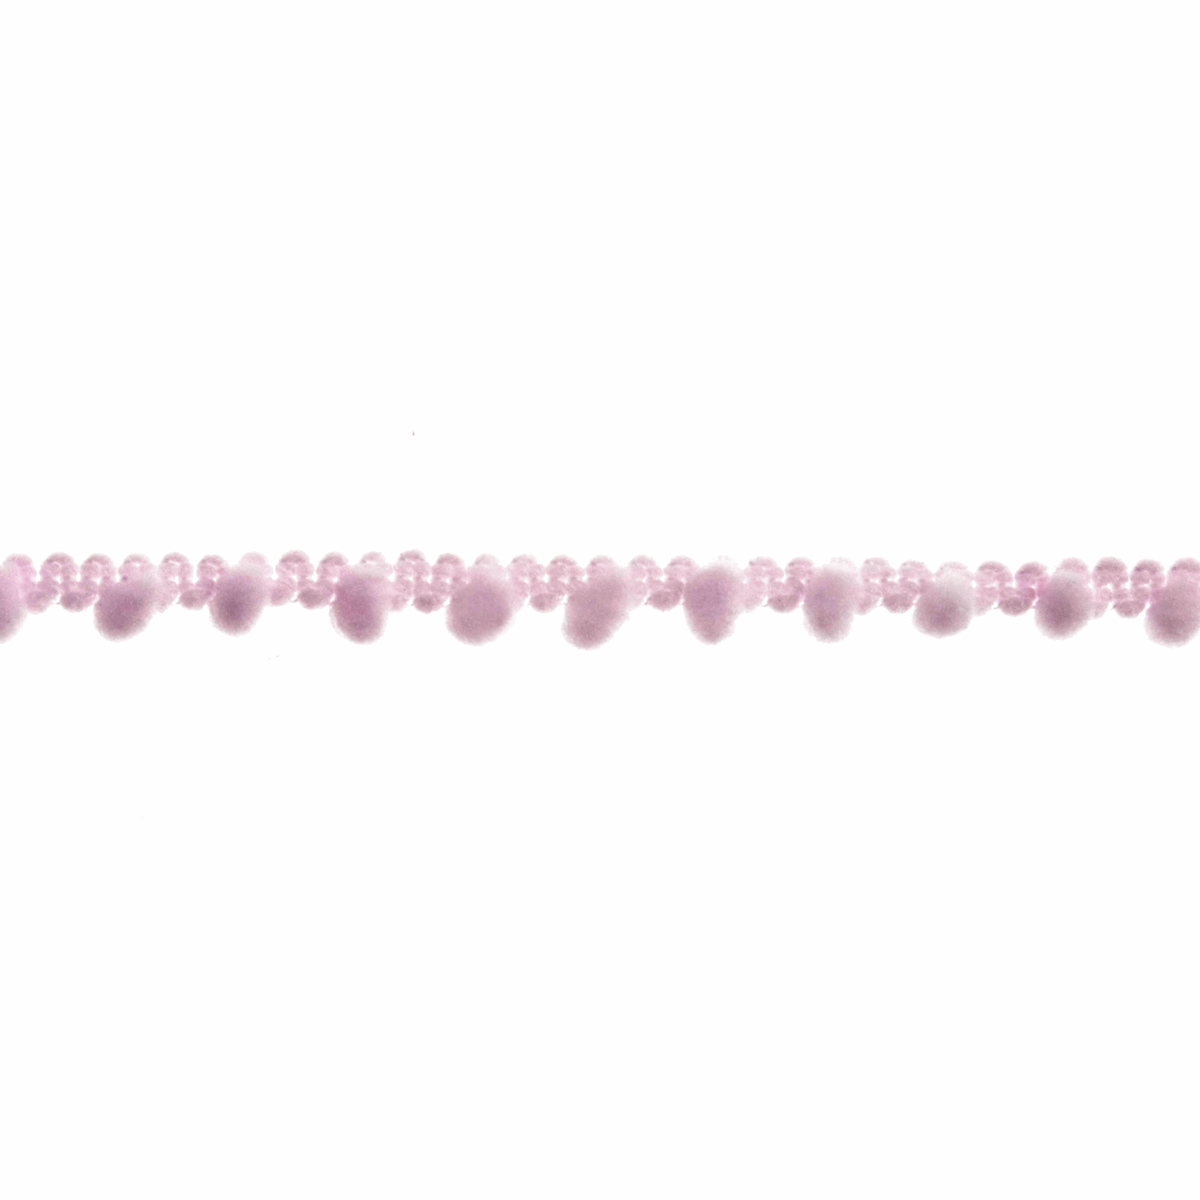 Trimits Small Light Pink Pom Pom Trim Edging - 27.4m x 7mm (Full roll)